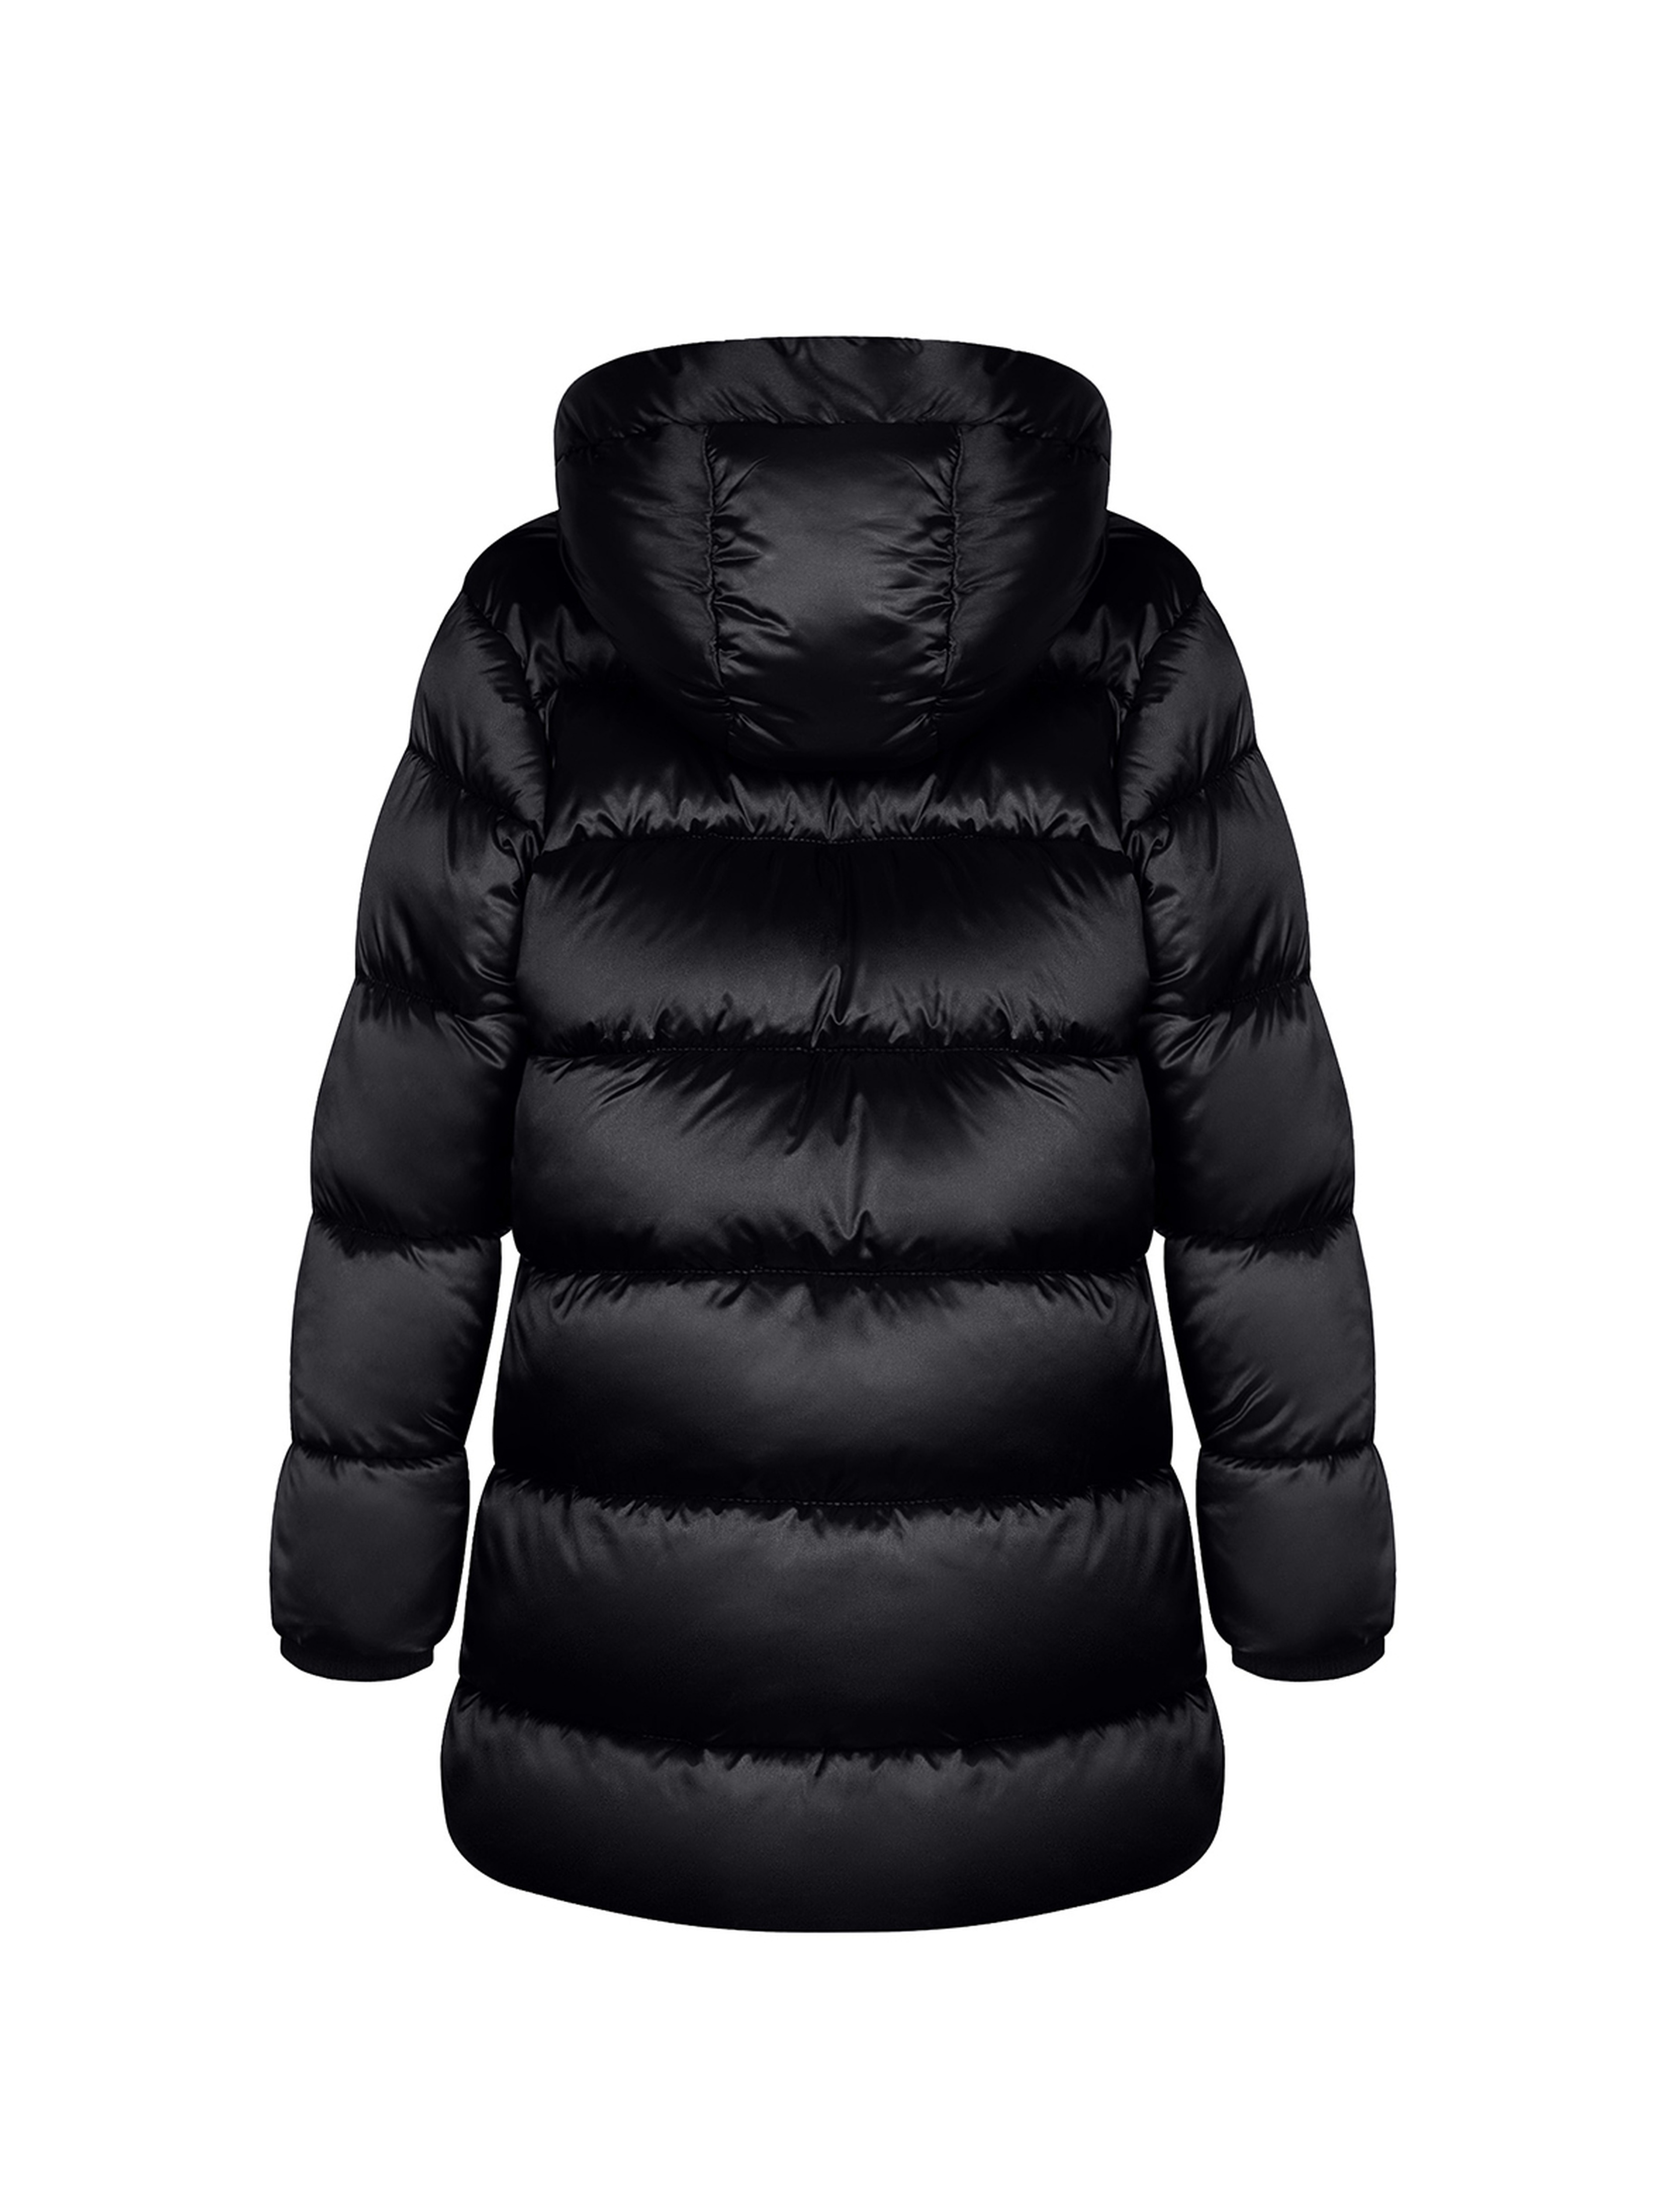 Płaszcz zimowy dla dziewczynki czarny z kapturem